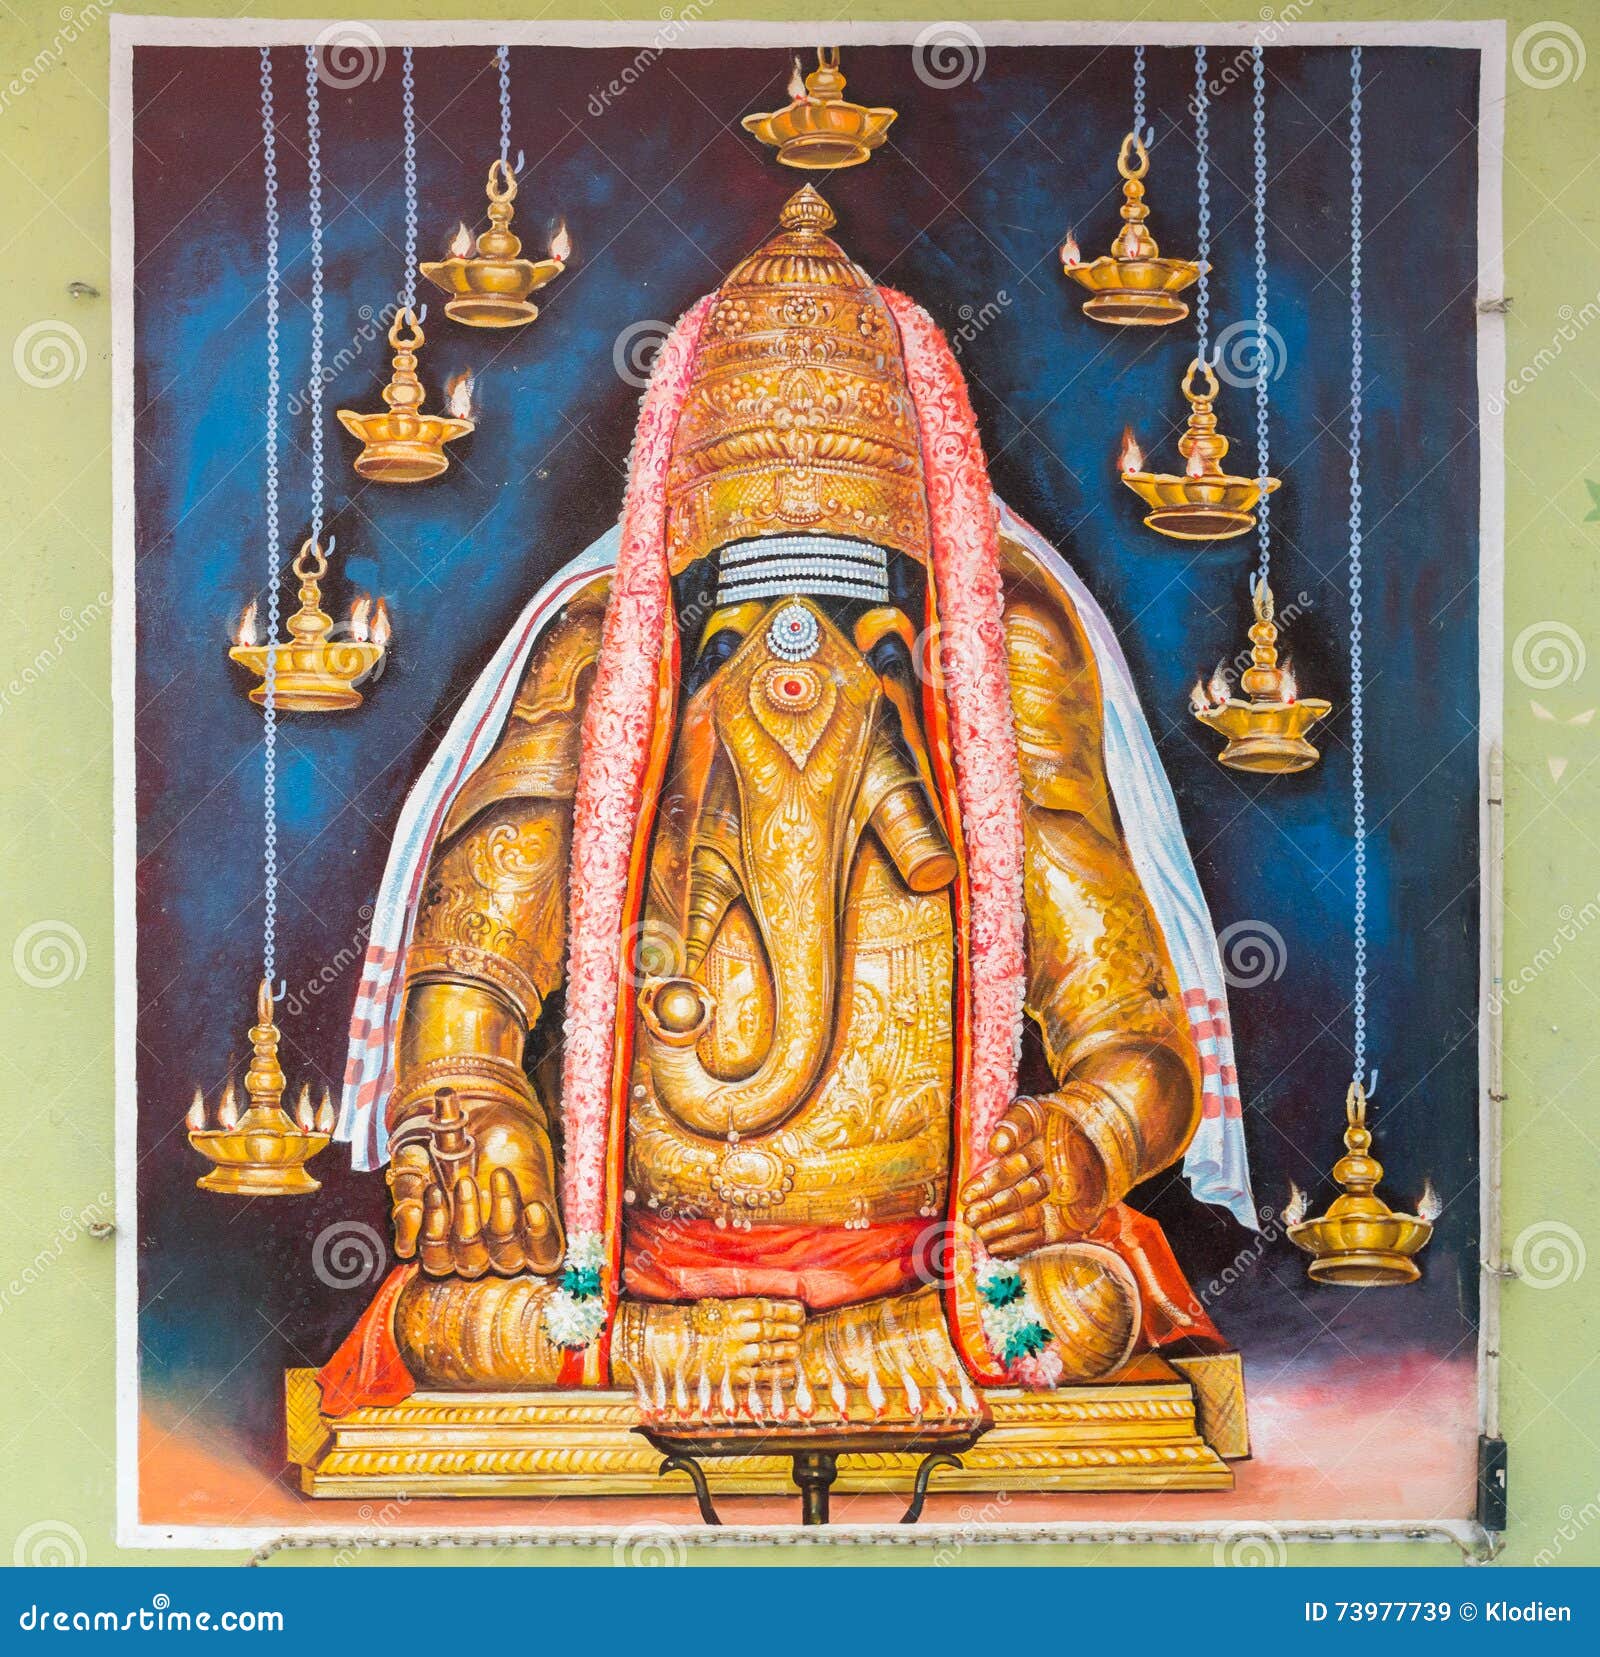 Image of Karpaga Vinayagar, Lord Ganesha. Editorial Stock Image ...